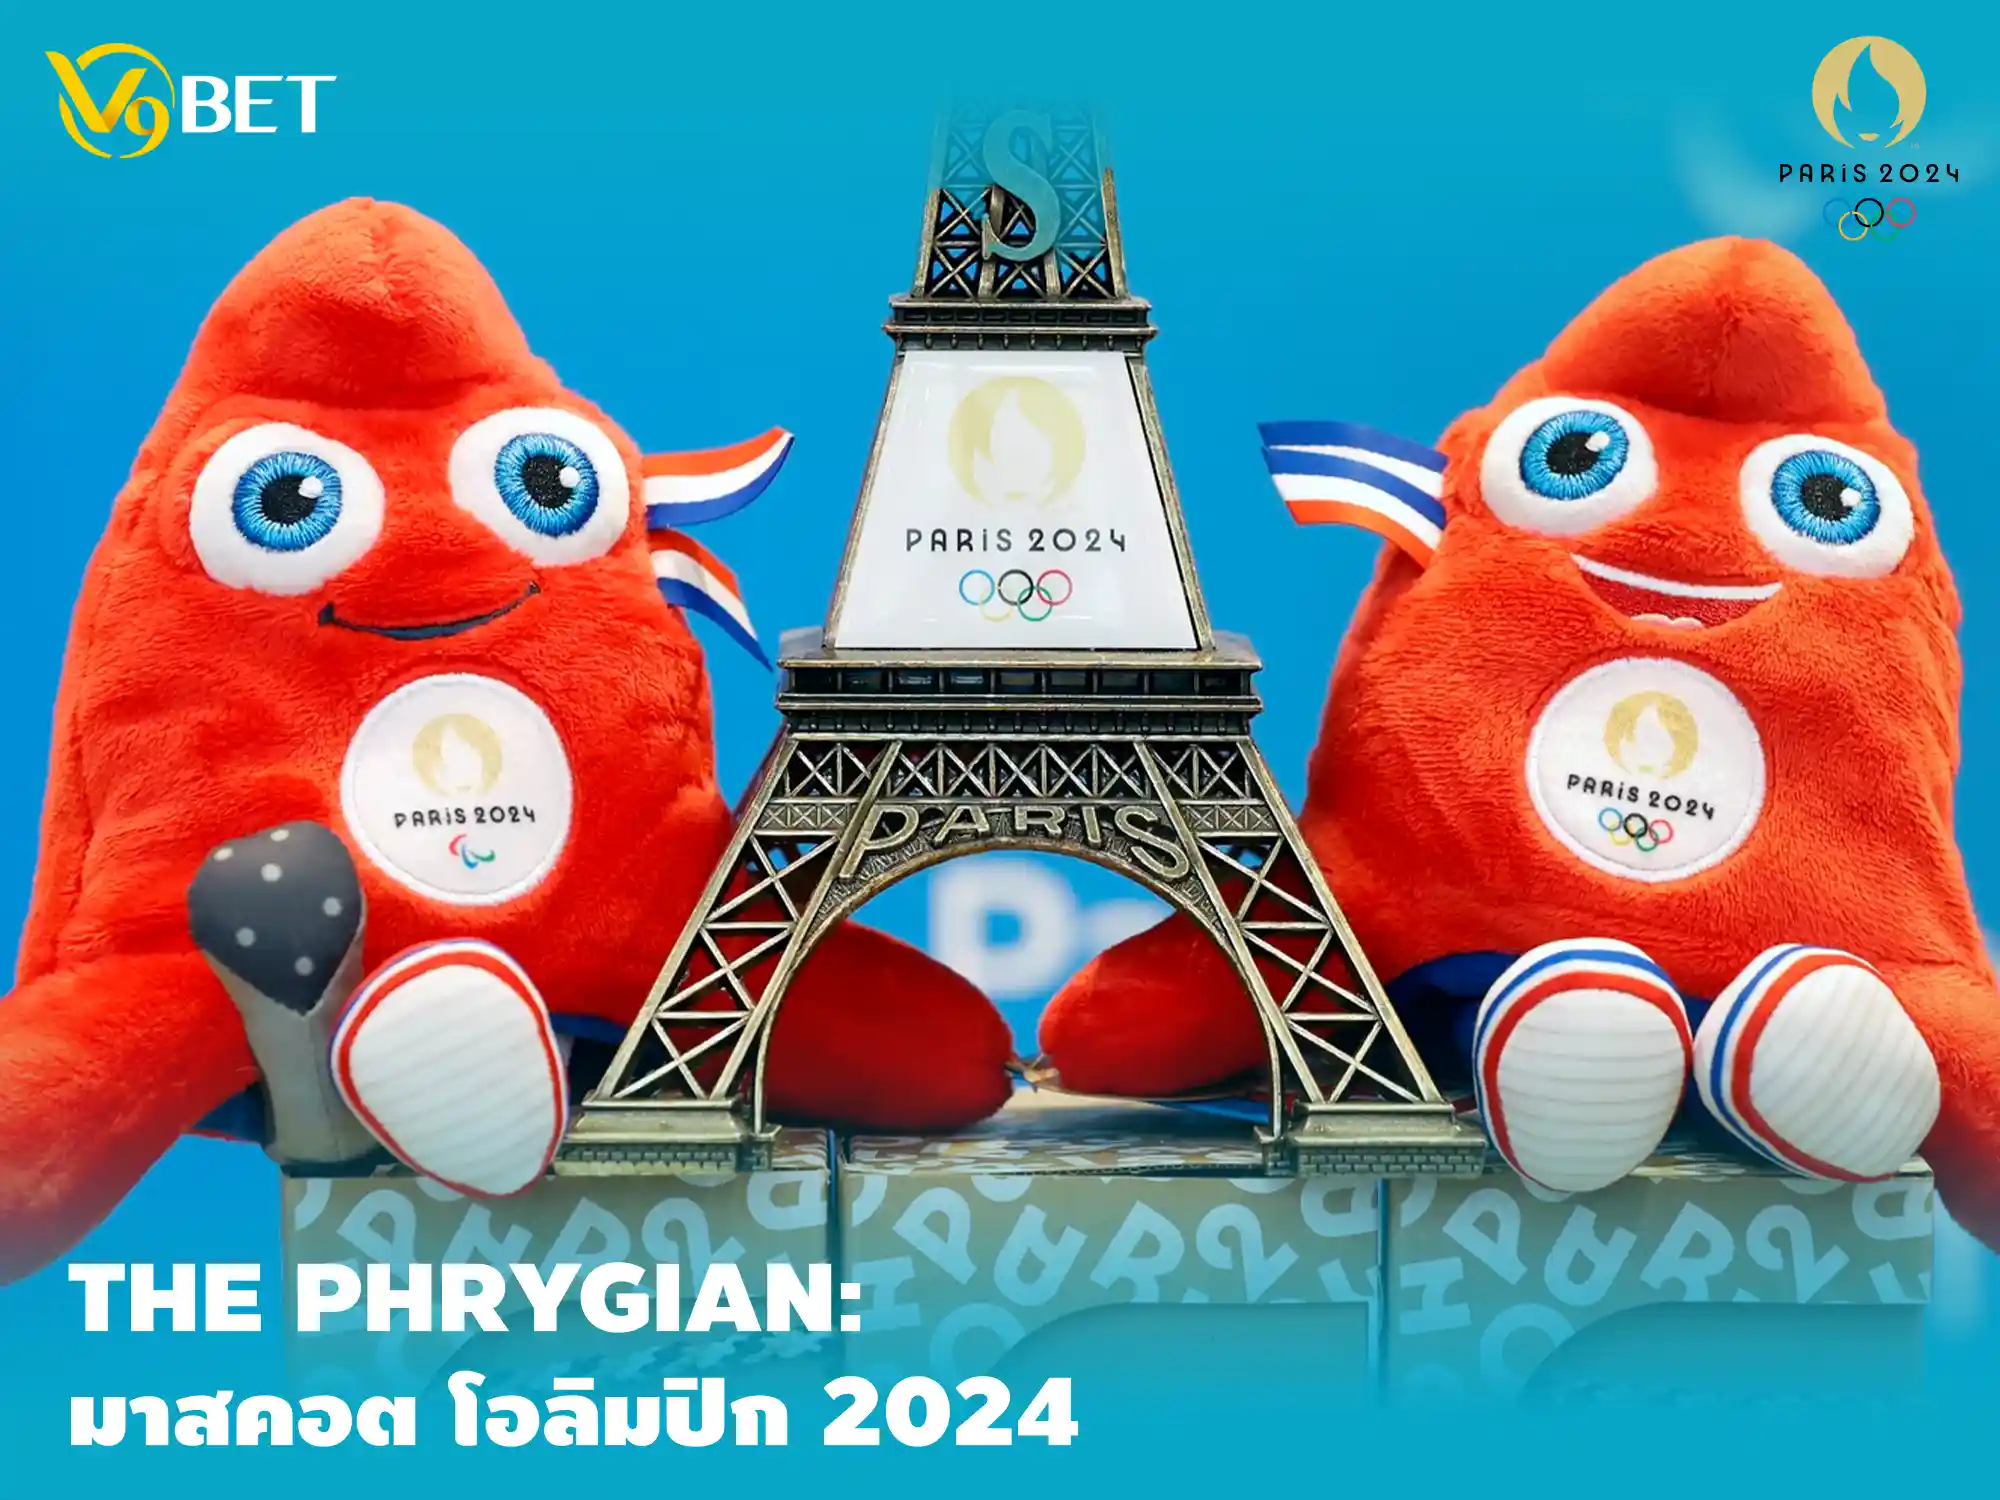 สีสันโอลิมปิก 2024 V9Bet พารู้จัก The Phrygian มาสคอตประจำรายการ